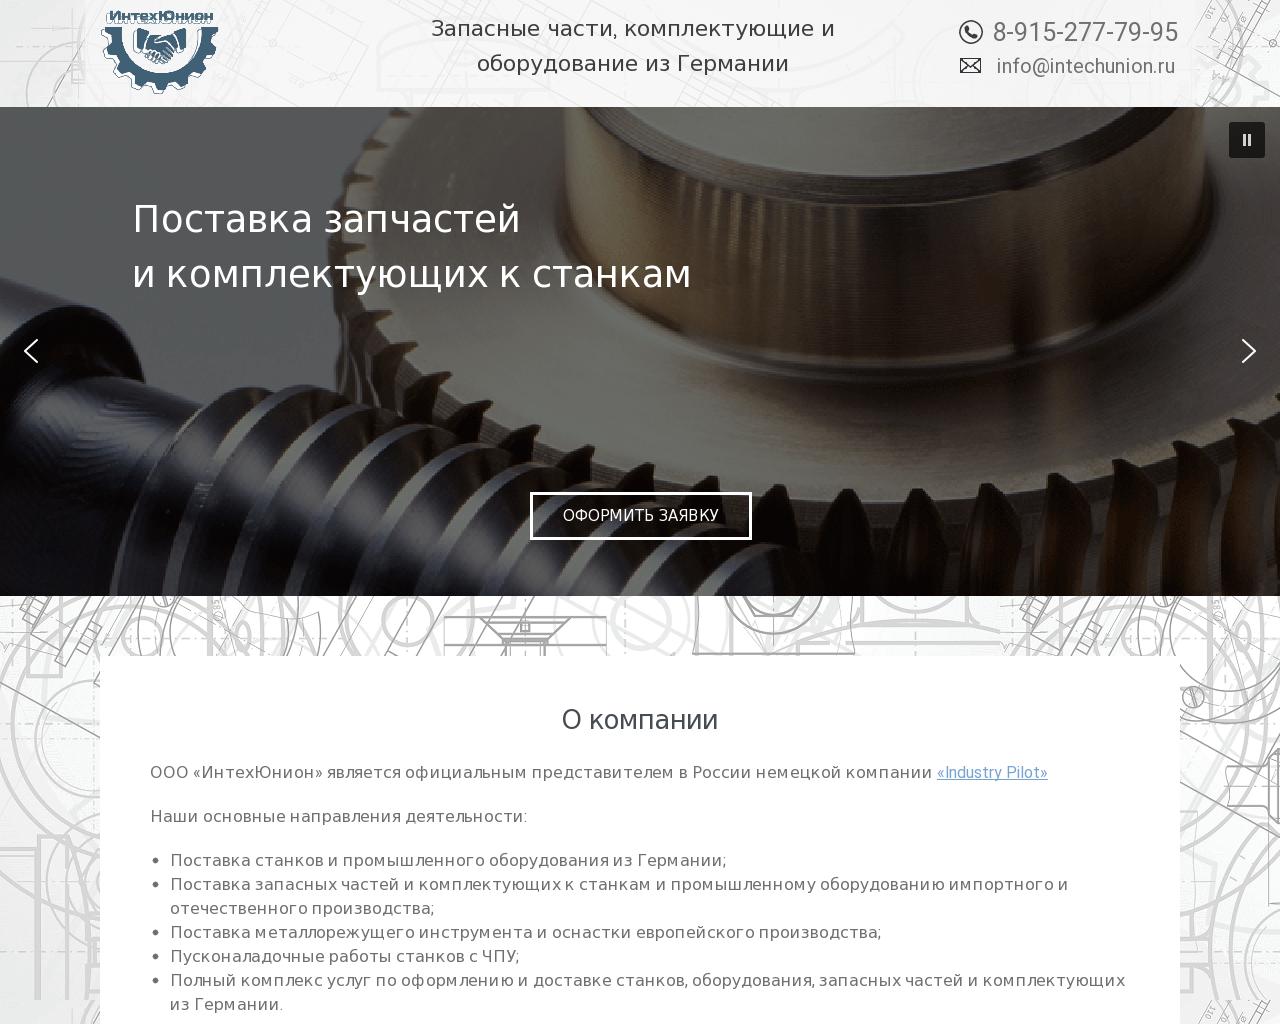 Изображение сайта intechunion.ru в разрешении 1280x1024